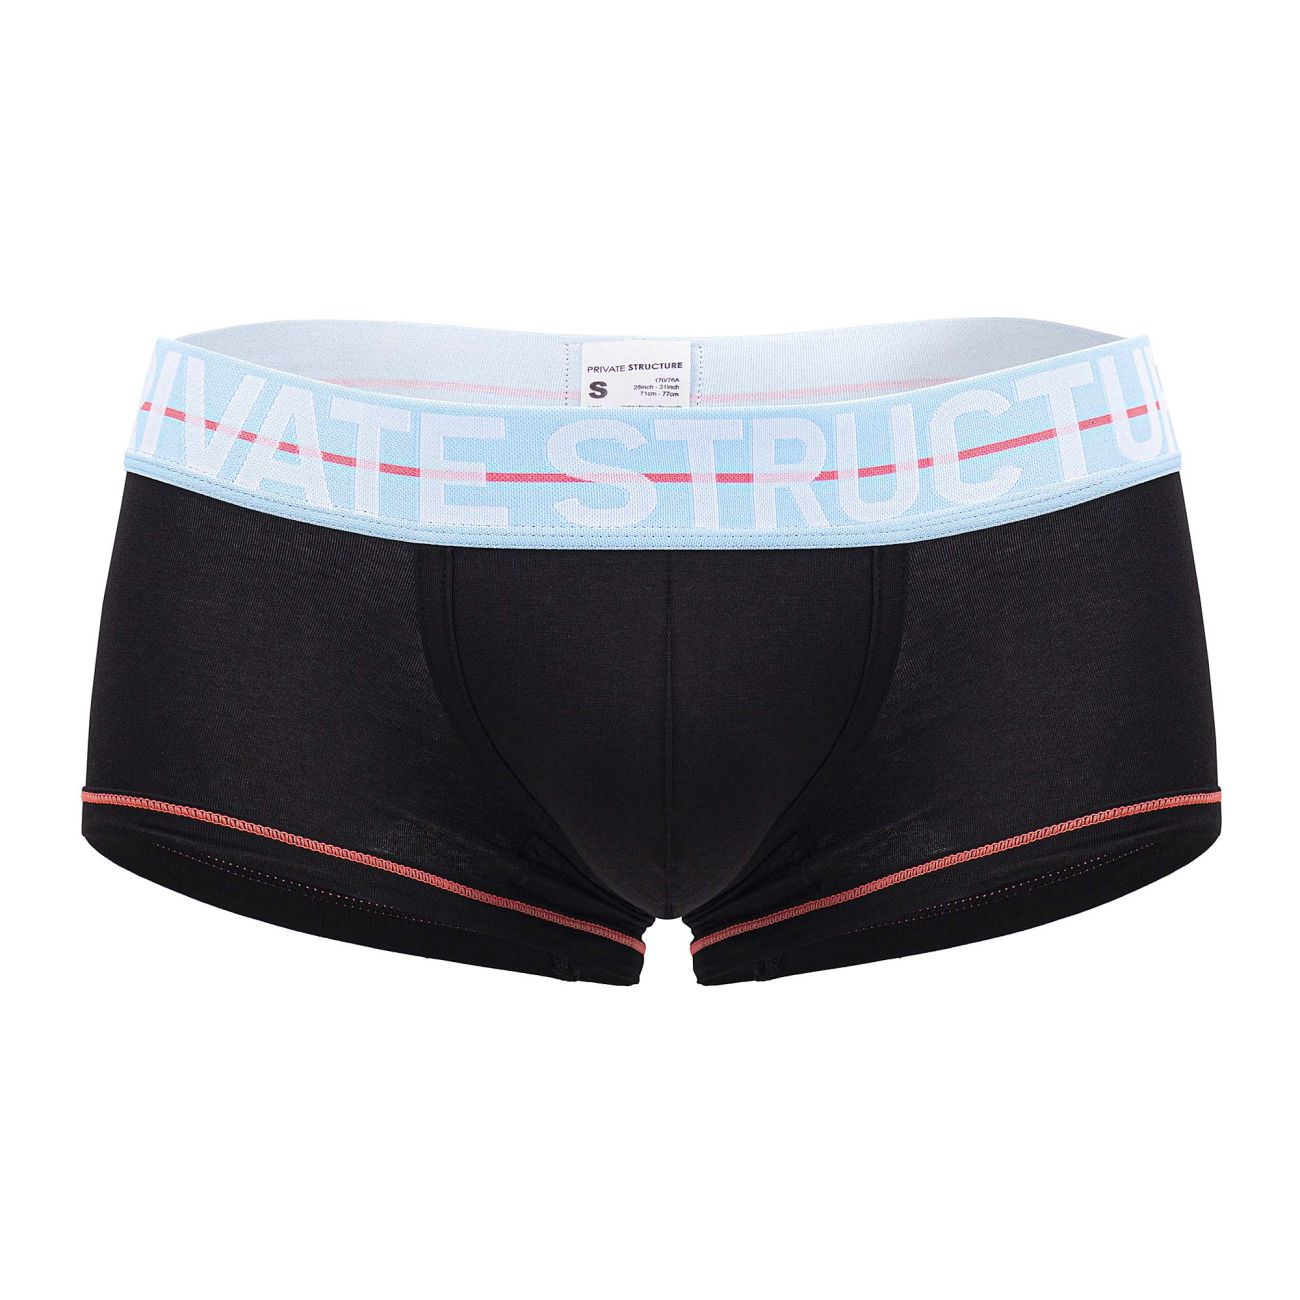 Black 'Murmure' underwear top LIVY - Vitkac Canada